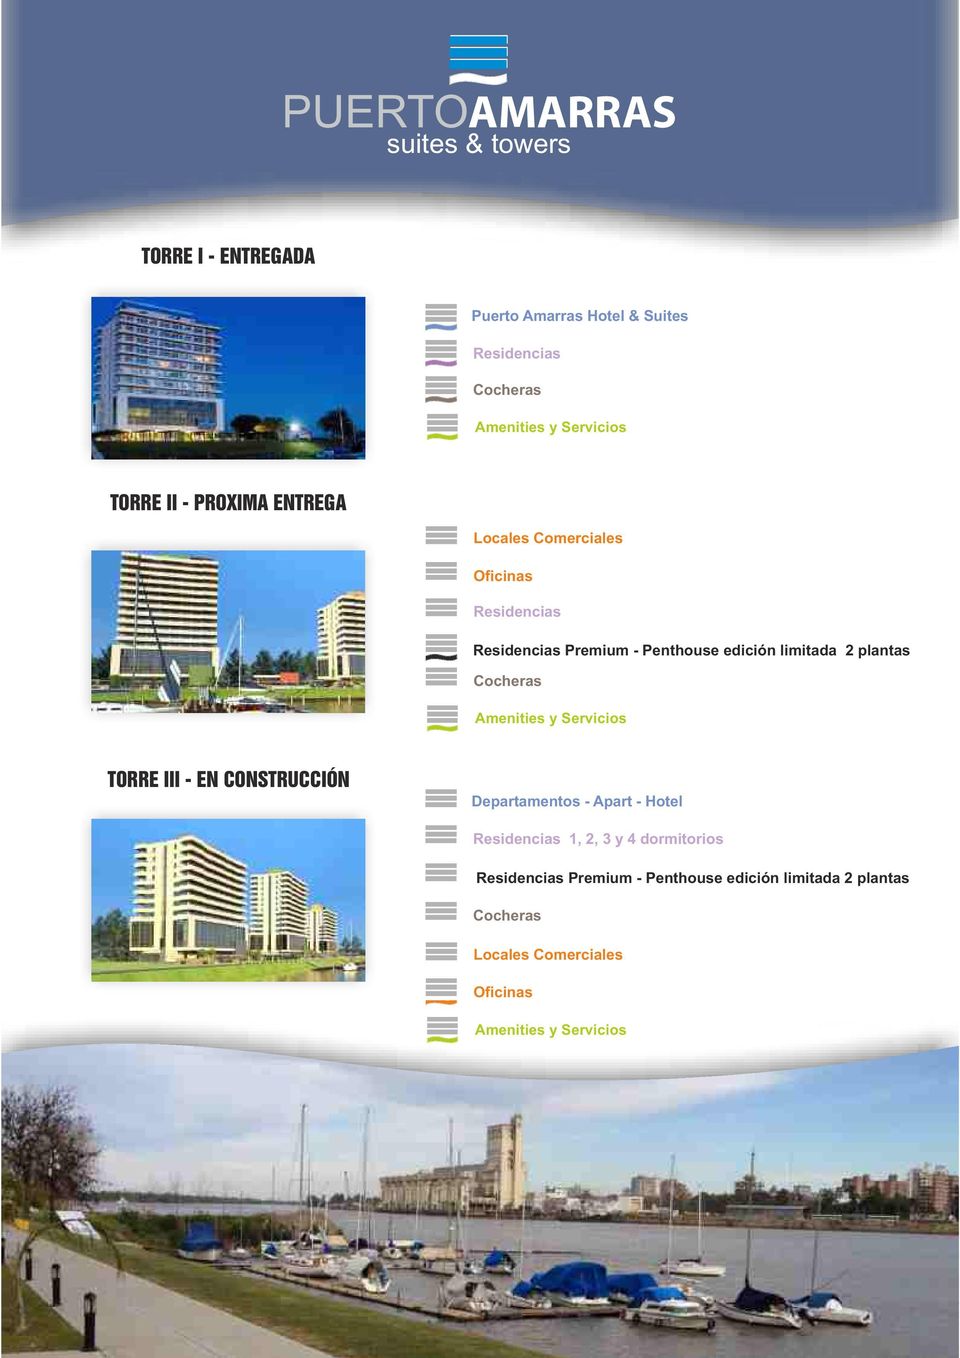 Cocheras Amenities y Servicios TORRE III - EN CONSTRUCCIÓN Departamentos - Apart - Hotel Residencias 1, 2, 3 y 4